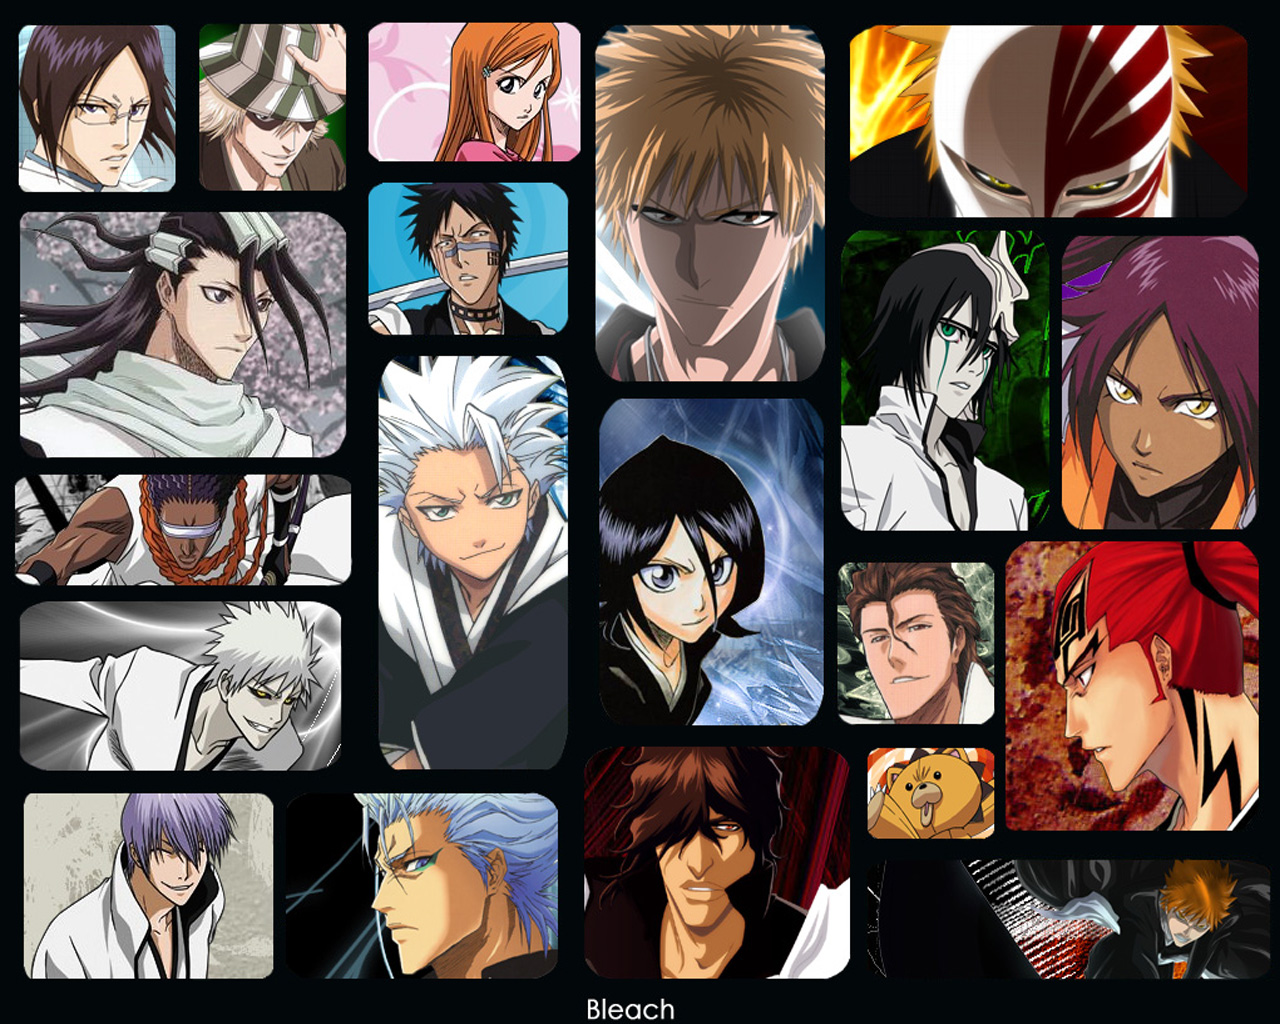 Free download wallpaper Anime, Bleach, Rukia Kuchiki, Renji Abarai, Ichigo Kurosaki, Orihime Inoue, Uryu Ishida, Yasutora Sado, Ulquiorra Cifer, Byakuya Kuchiki, Yoruichi Shihôin, Tōshirō Hitsugaya, Kisuke Urahara, Kon (Bleach), Gin Ichimaru, Kaname Tosen, Grimmjow Jaegerjaquez, Hisagi Shūhei on your PC desktop